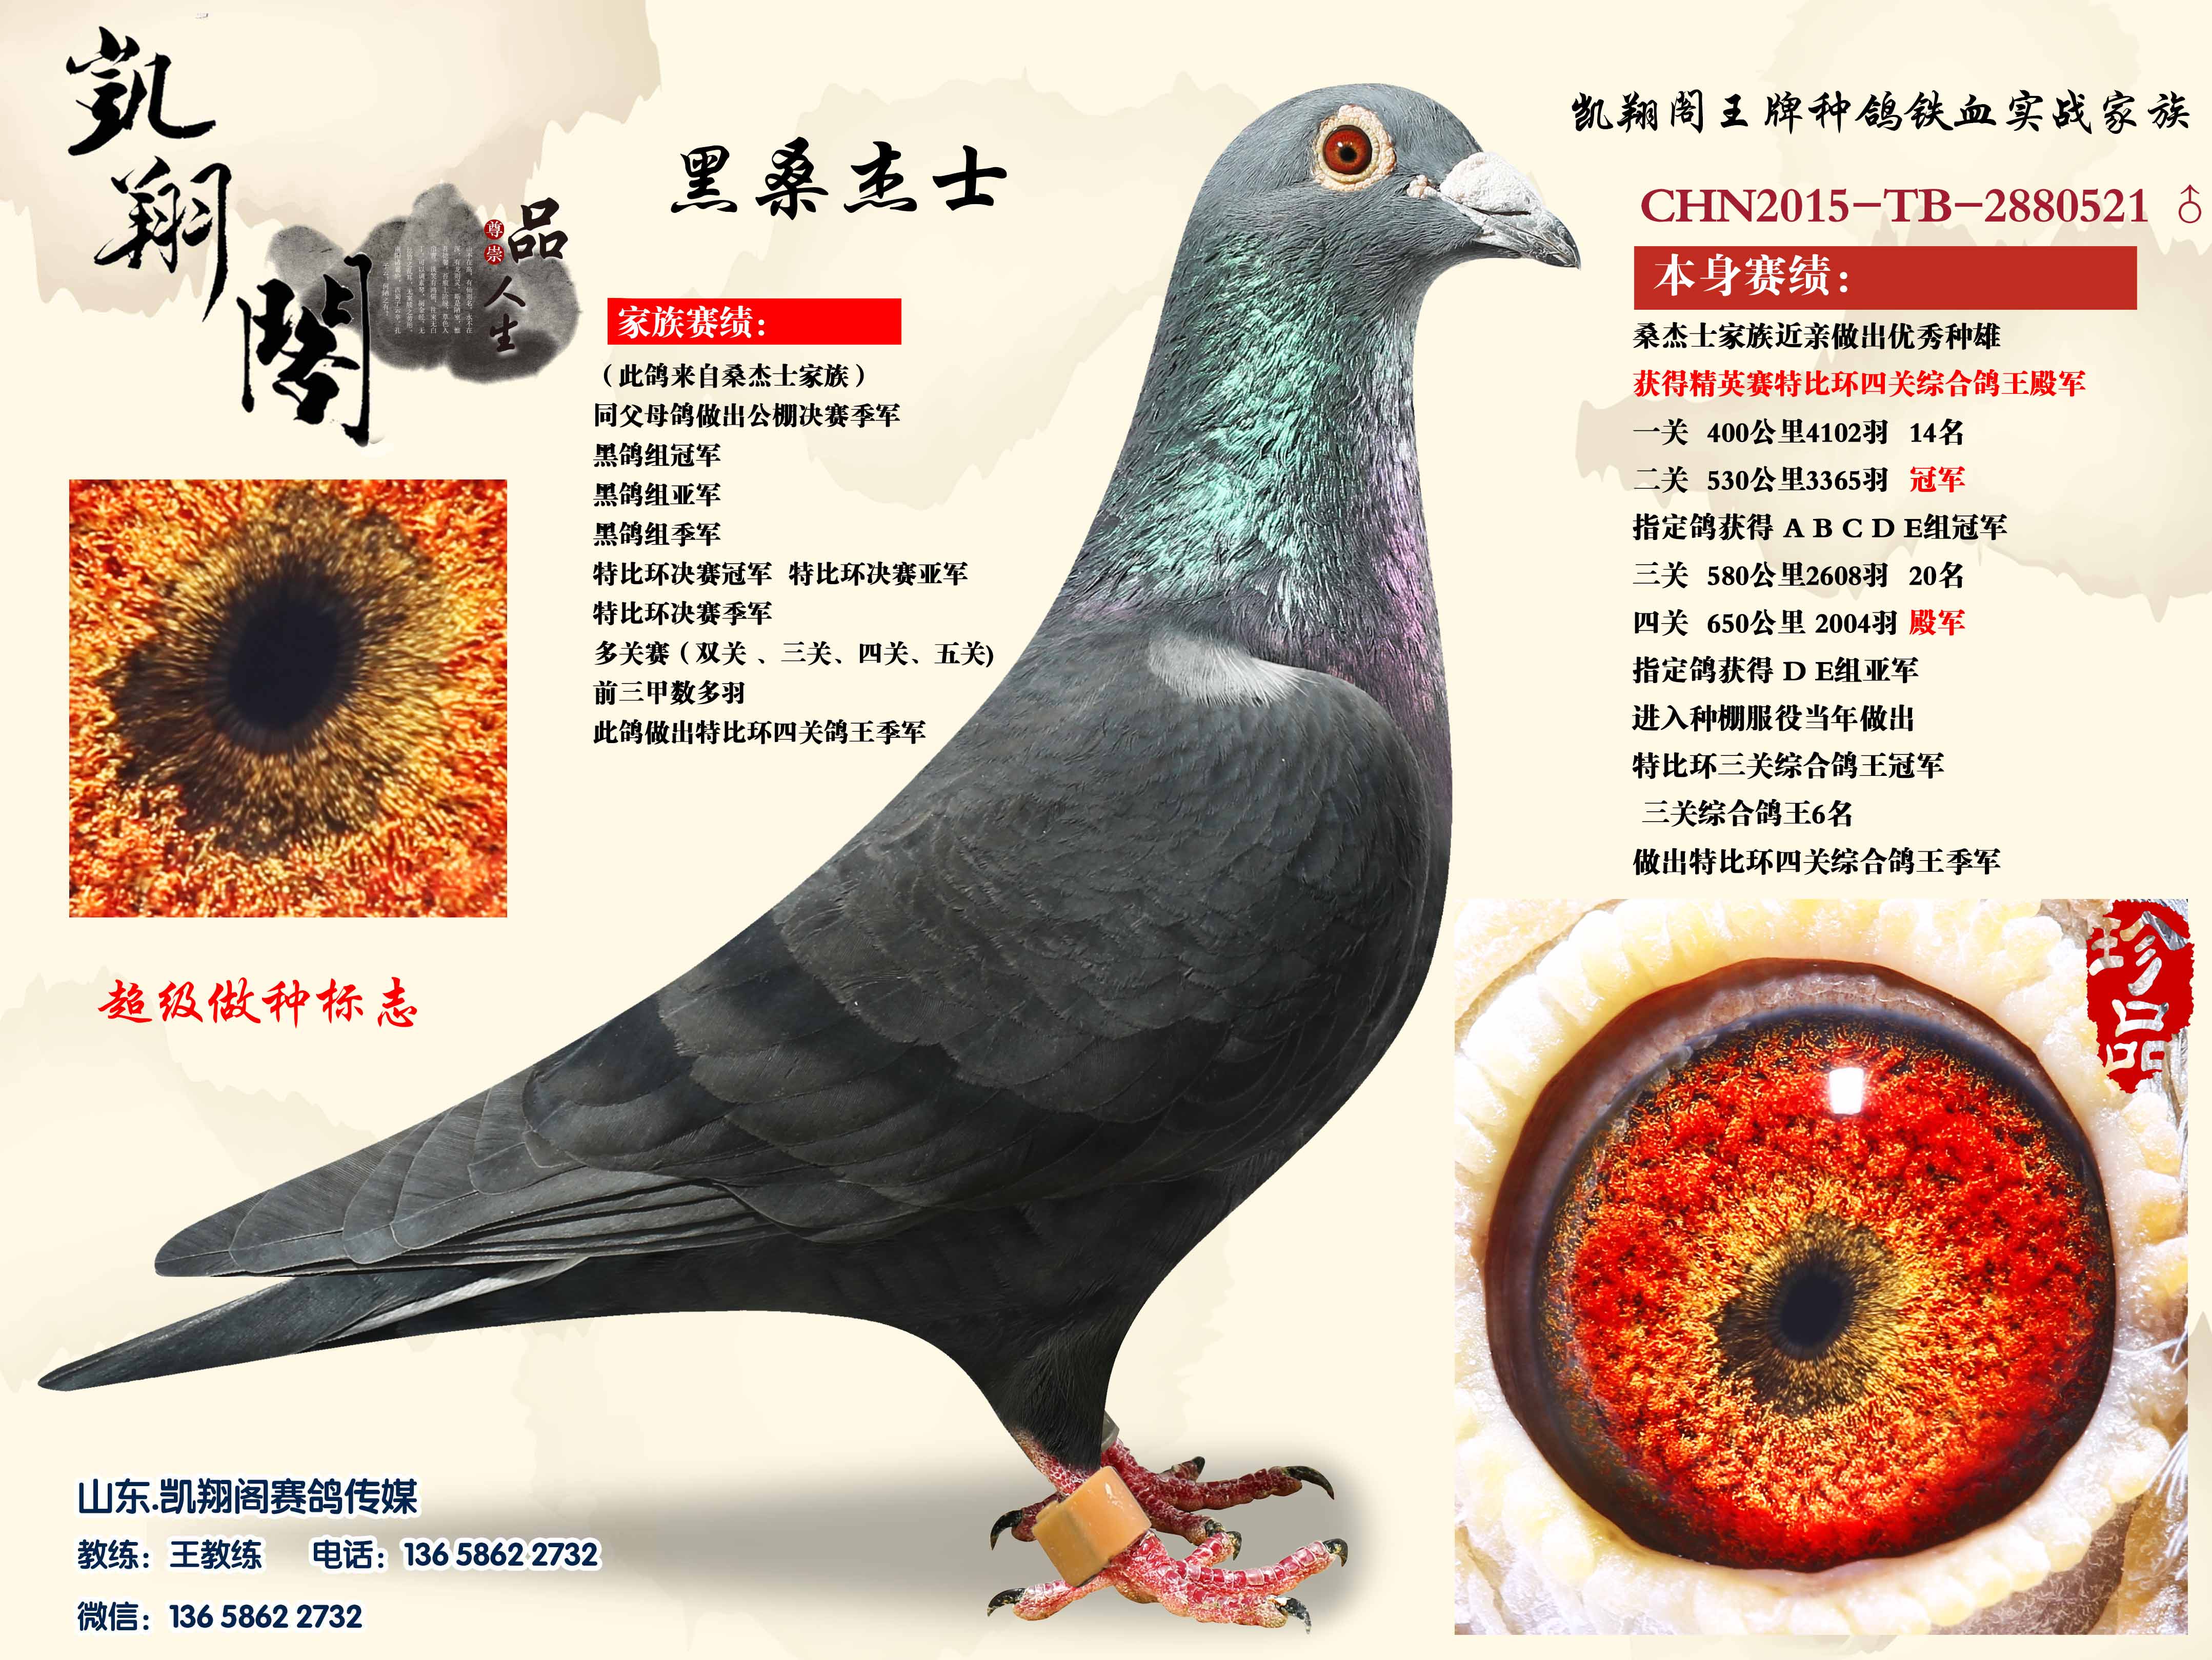 三路鸽子 飞戈 丝丝 桑杰士-中国信鸽信息网相册